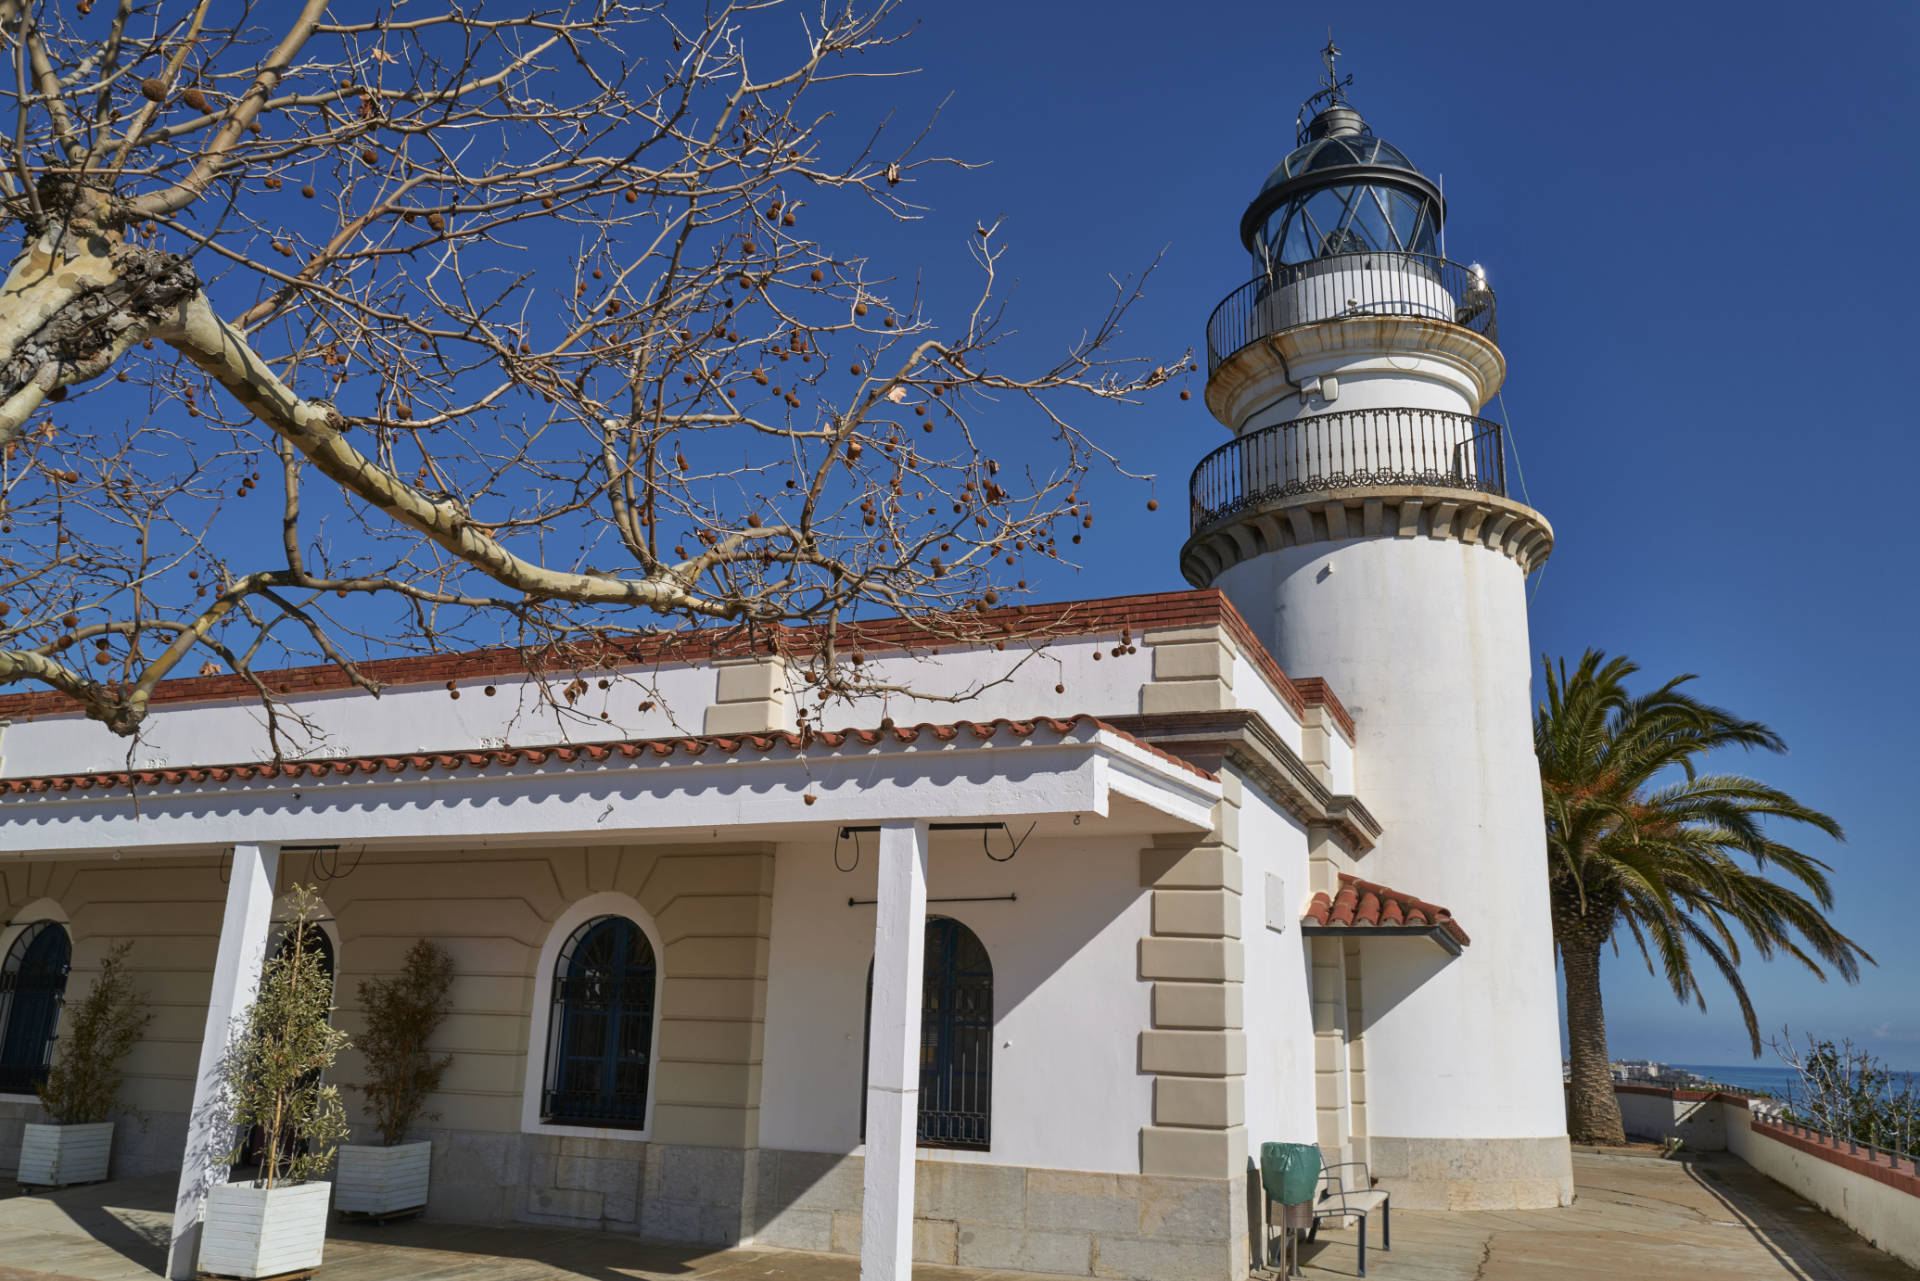 Leuchtturm Far de Calella an der Costa del Maresme.